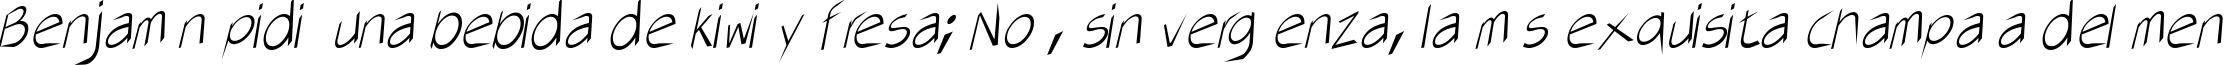 Пример написания шрифтом AirCut Light текста на испанском